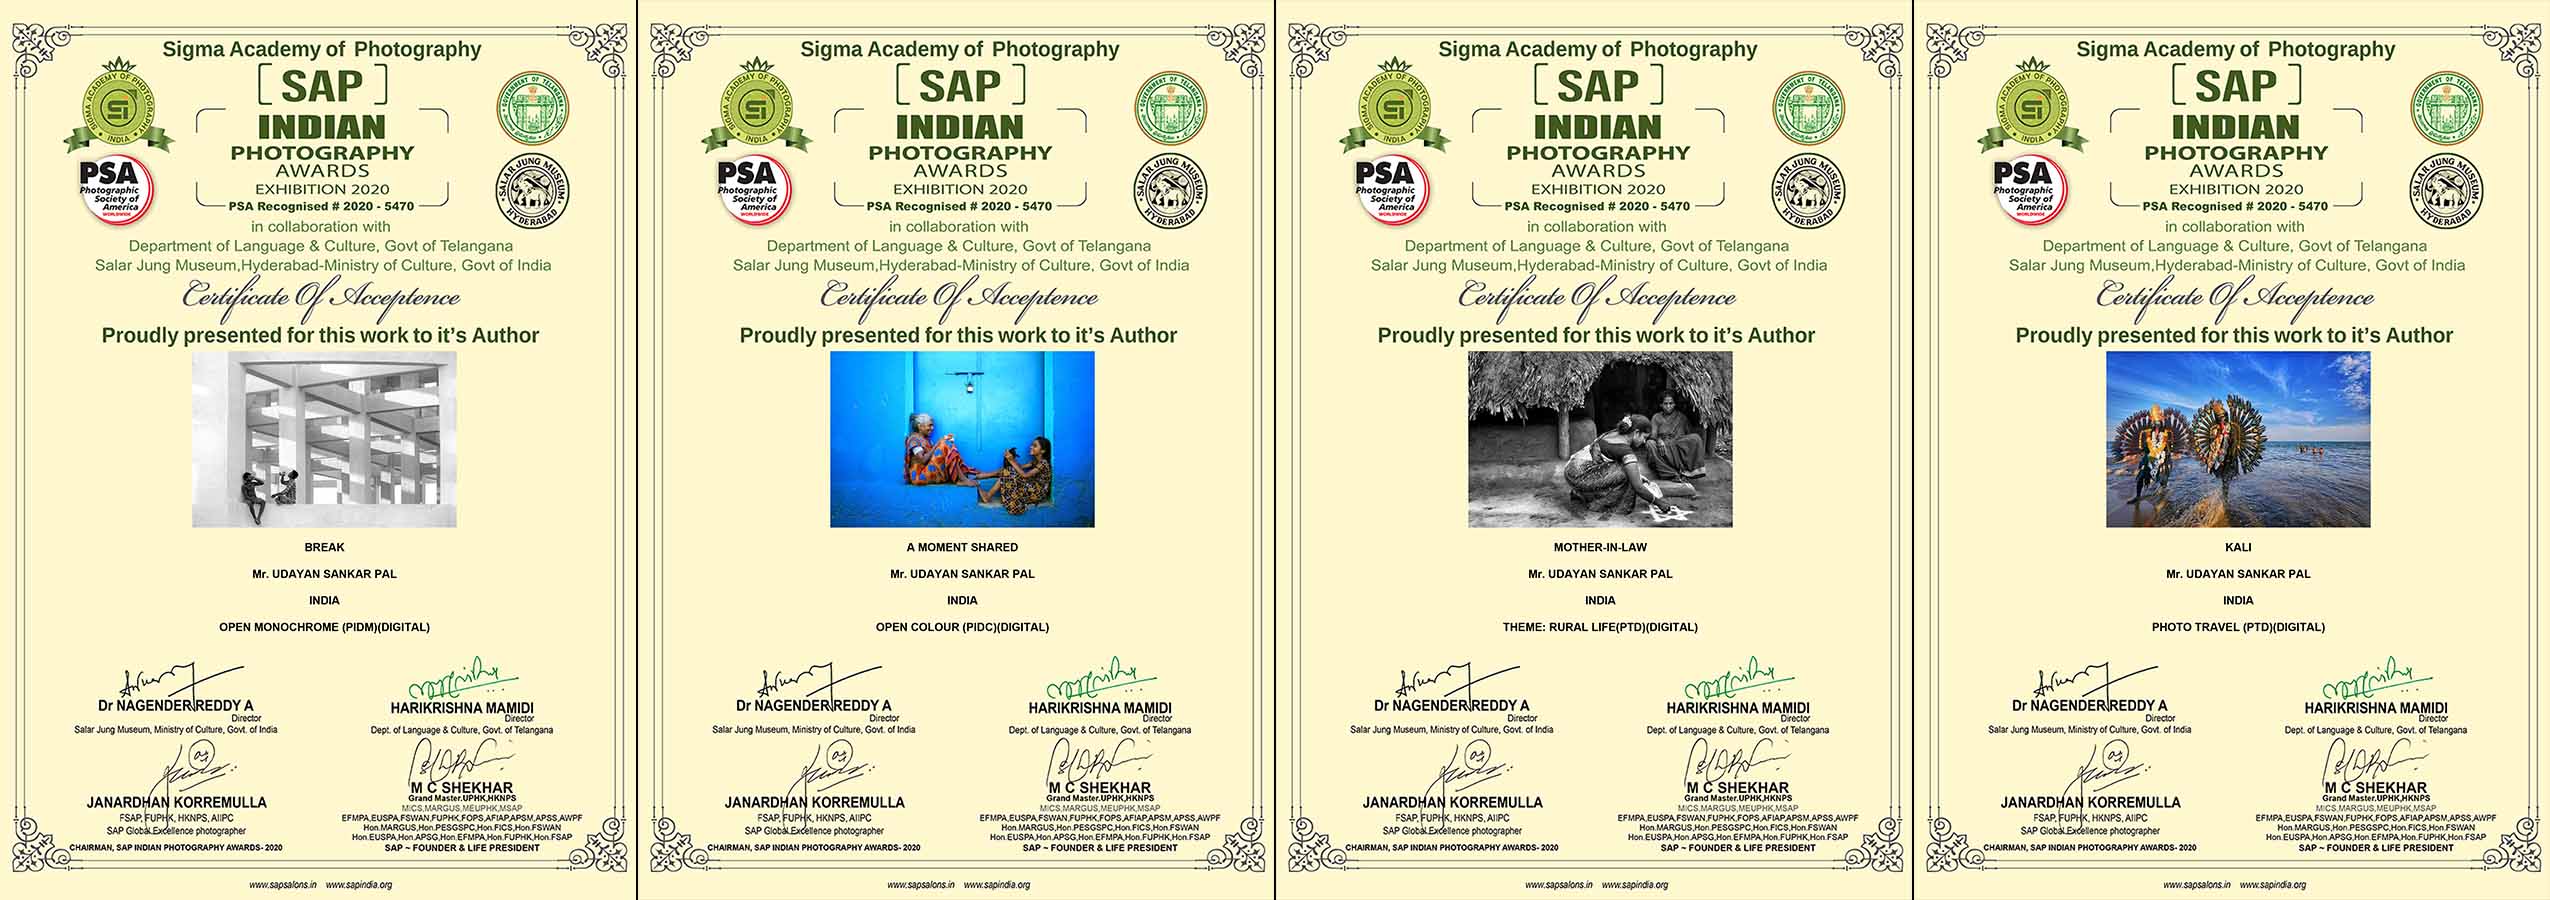 SAP Indian Photography Awards-2020